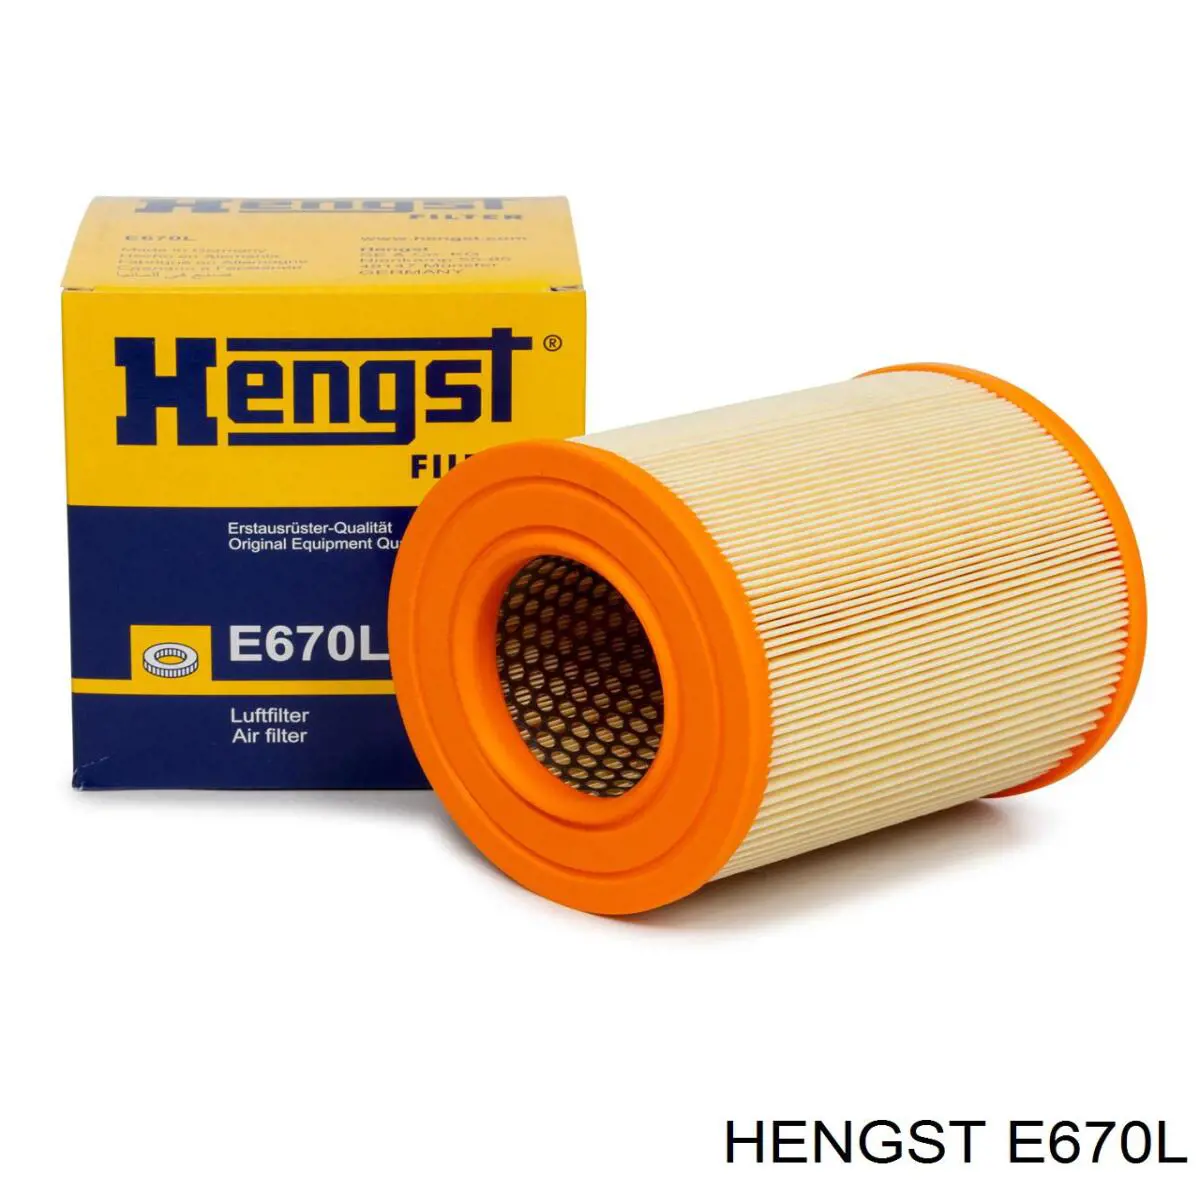 E670L Hengst filtro de aire